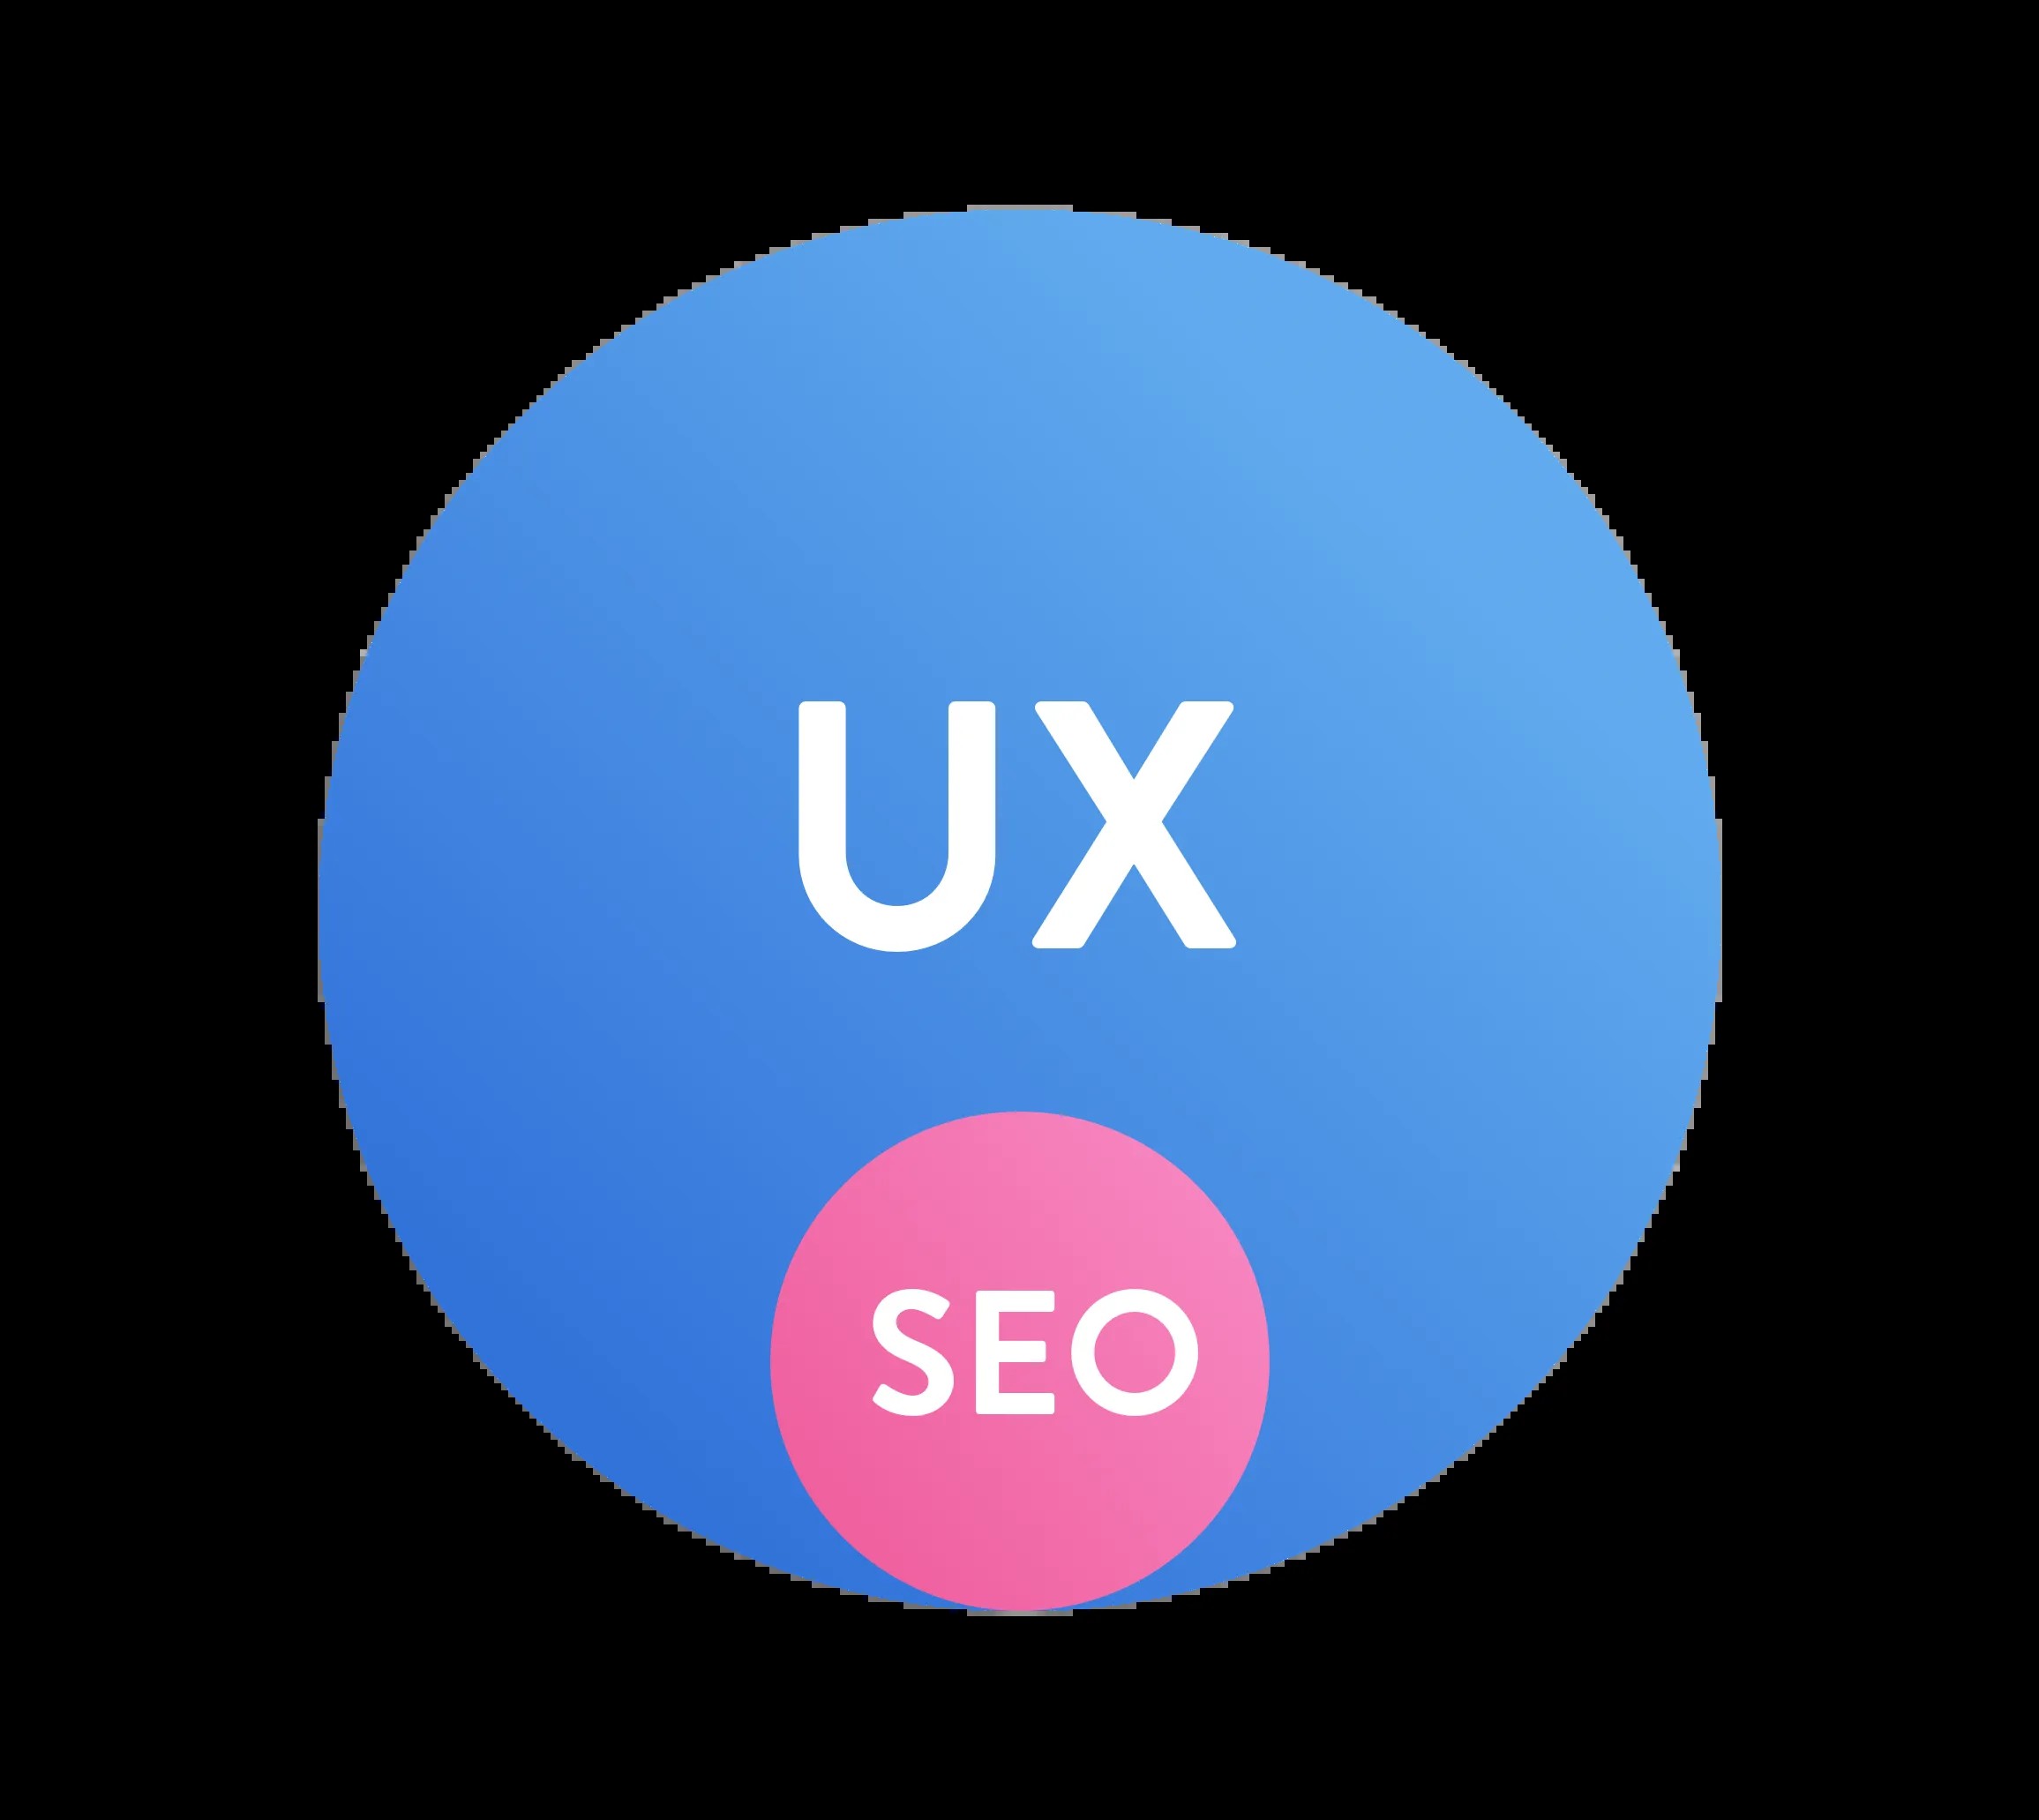 SEO für UX – SEO ist ein Teil der Aufgaben von UX